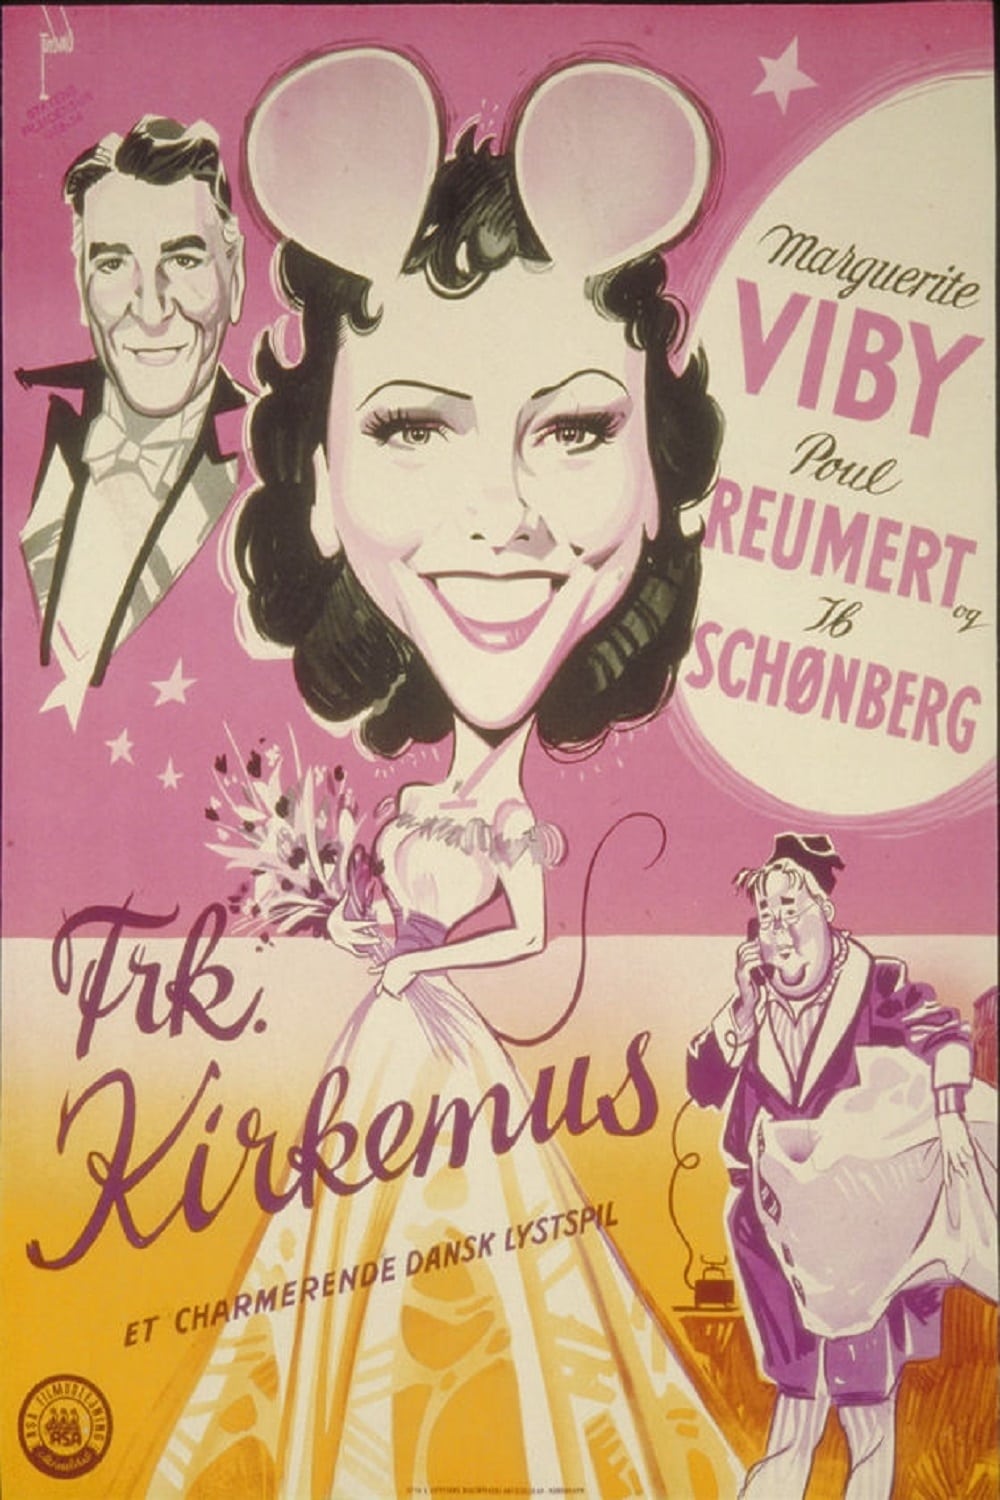 Frk. Kirkemus (1941)